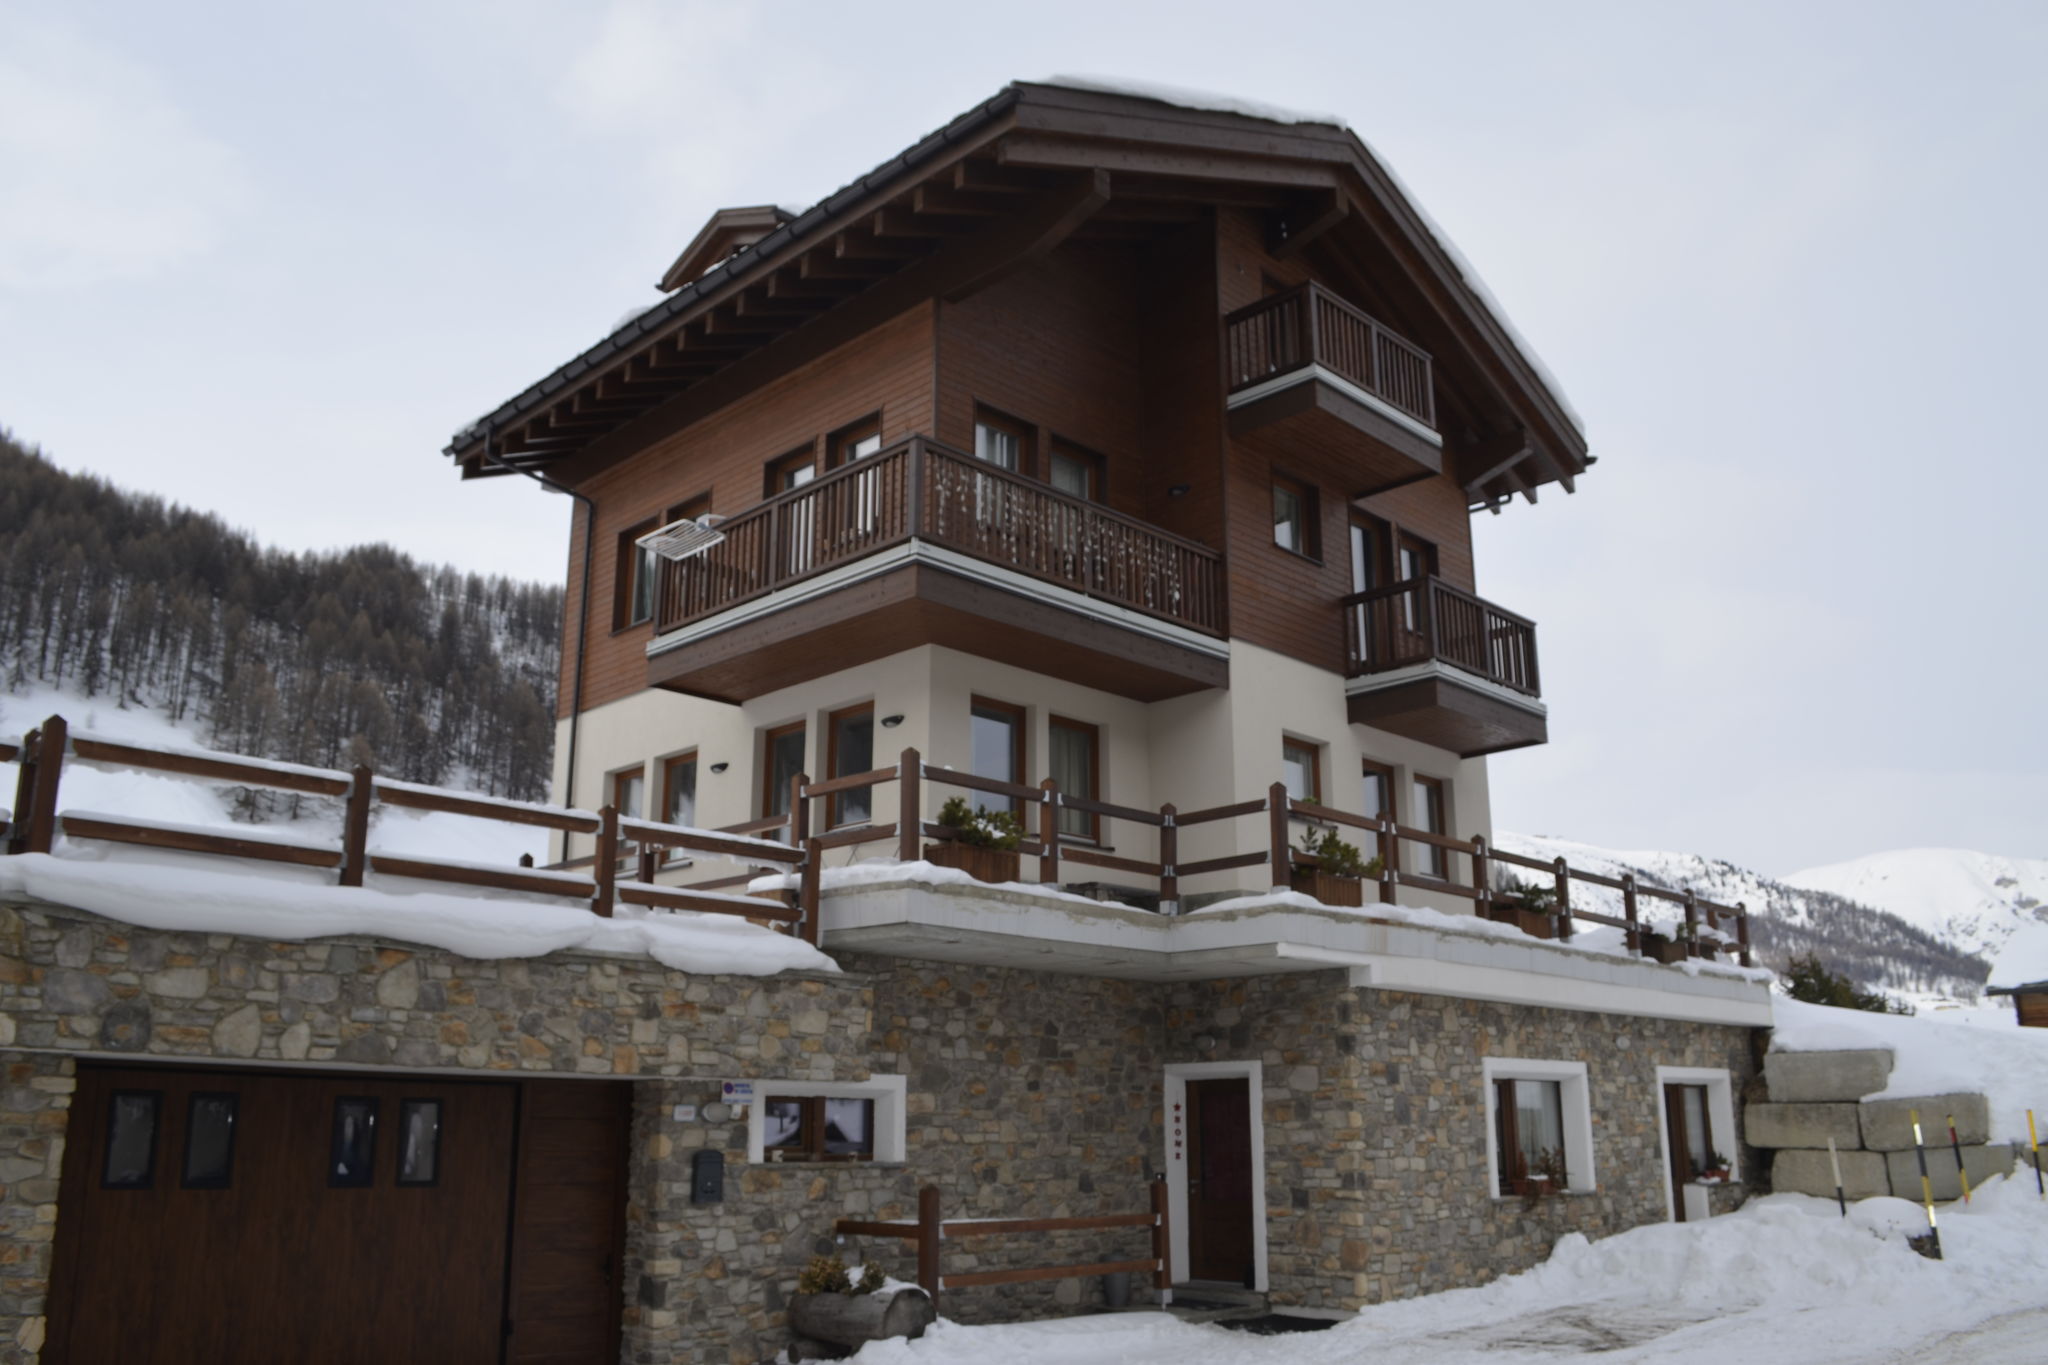 Appartement in Baita op slechts 30 meter afstand van de skiliften